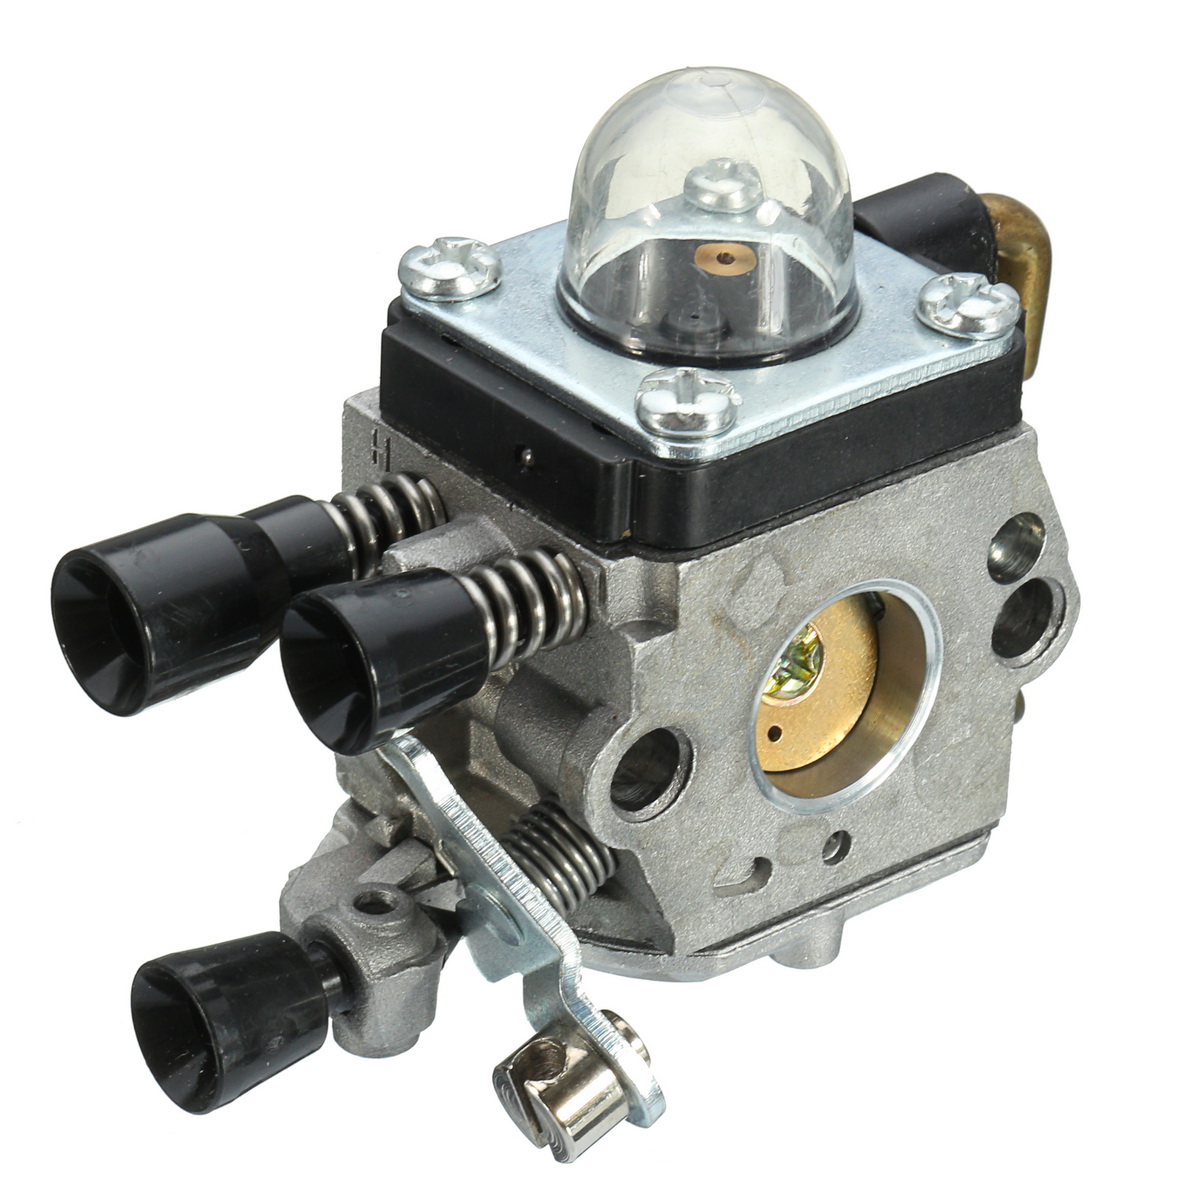 

Carburetor Carb Air Filter Spark For FS55R FS55RC KM55 HL45 KM55R STIHL Trimmer